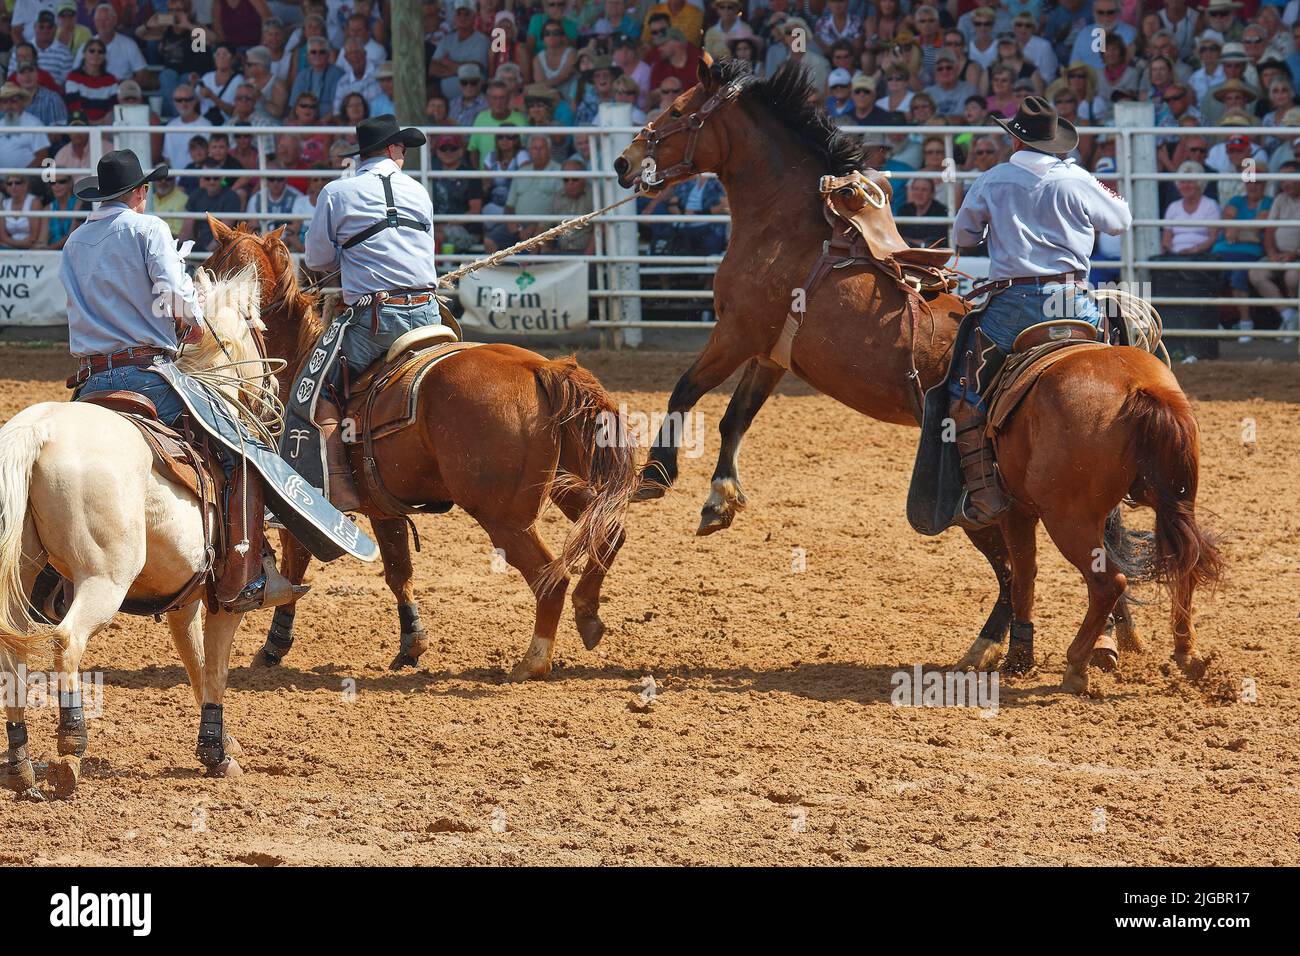 rodeo, 3 hommes corraling cheval de chasse, travail, compétence, mouvement, spectateurs, concours, compétition, animal, personnes, foule, Floride ; Arcadia ; FL Banque D'Images